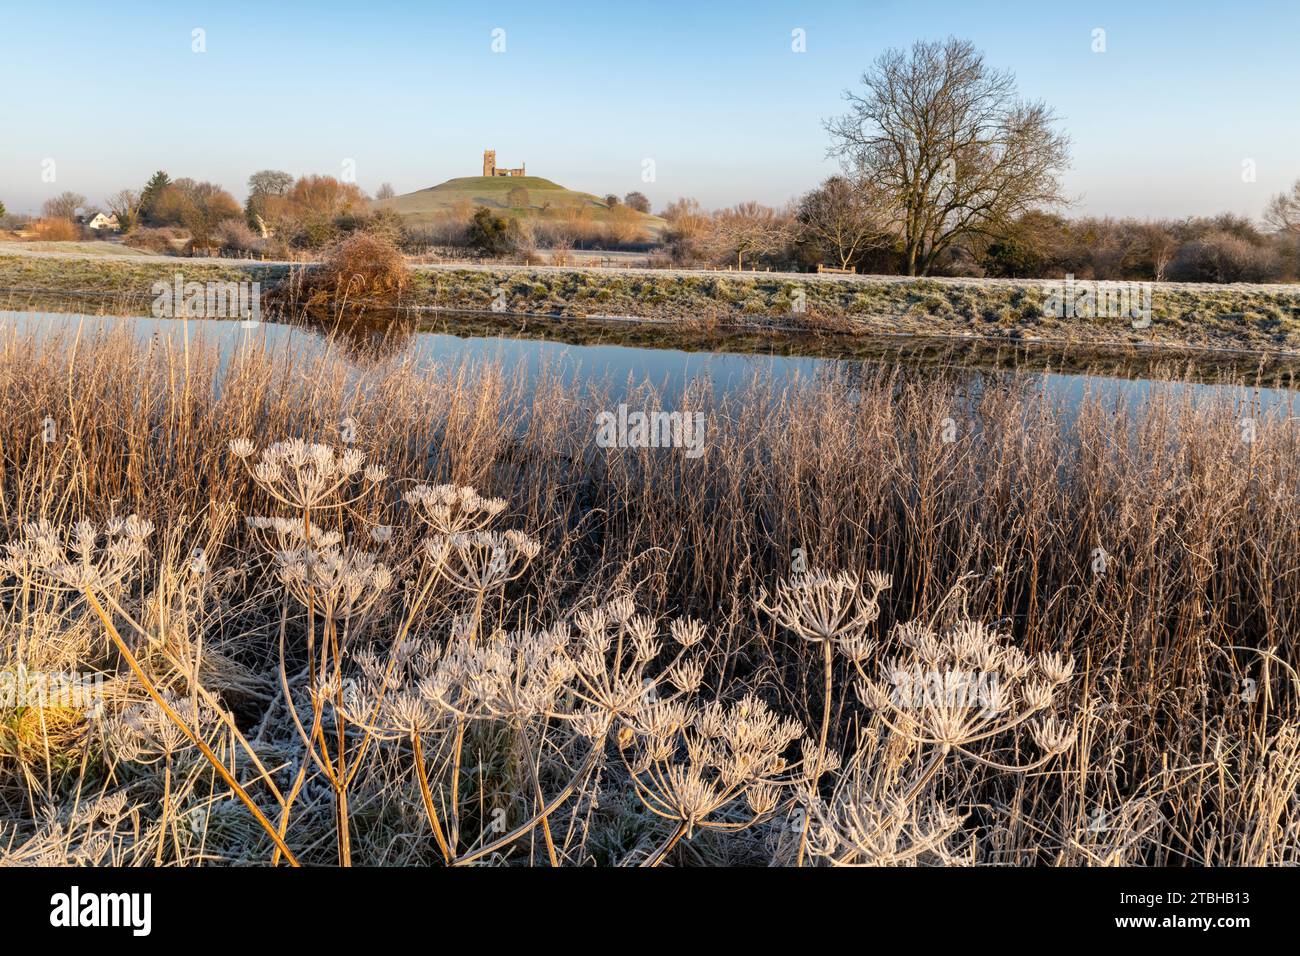 Plantes givrées sur les rives de la rivière Parrett, avec l'église Burrow Mump en arrière-plan, Burrowbridge, Somerset, Angleterre. Hiver (janvier) 2023. Banque D'Images